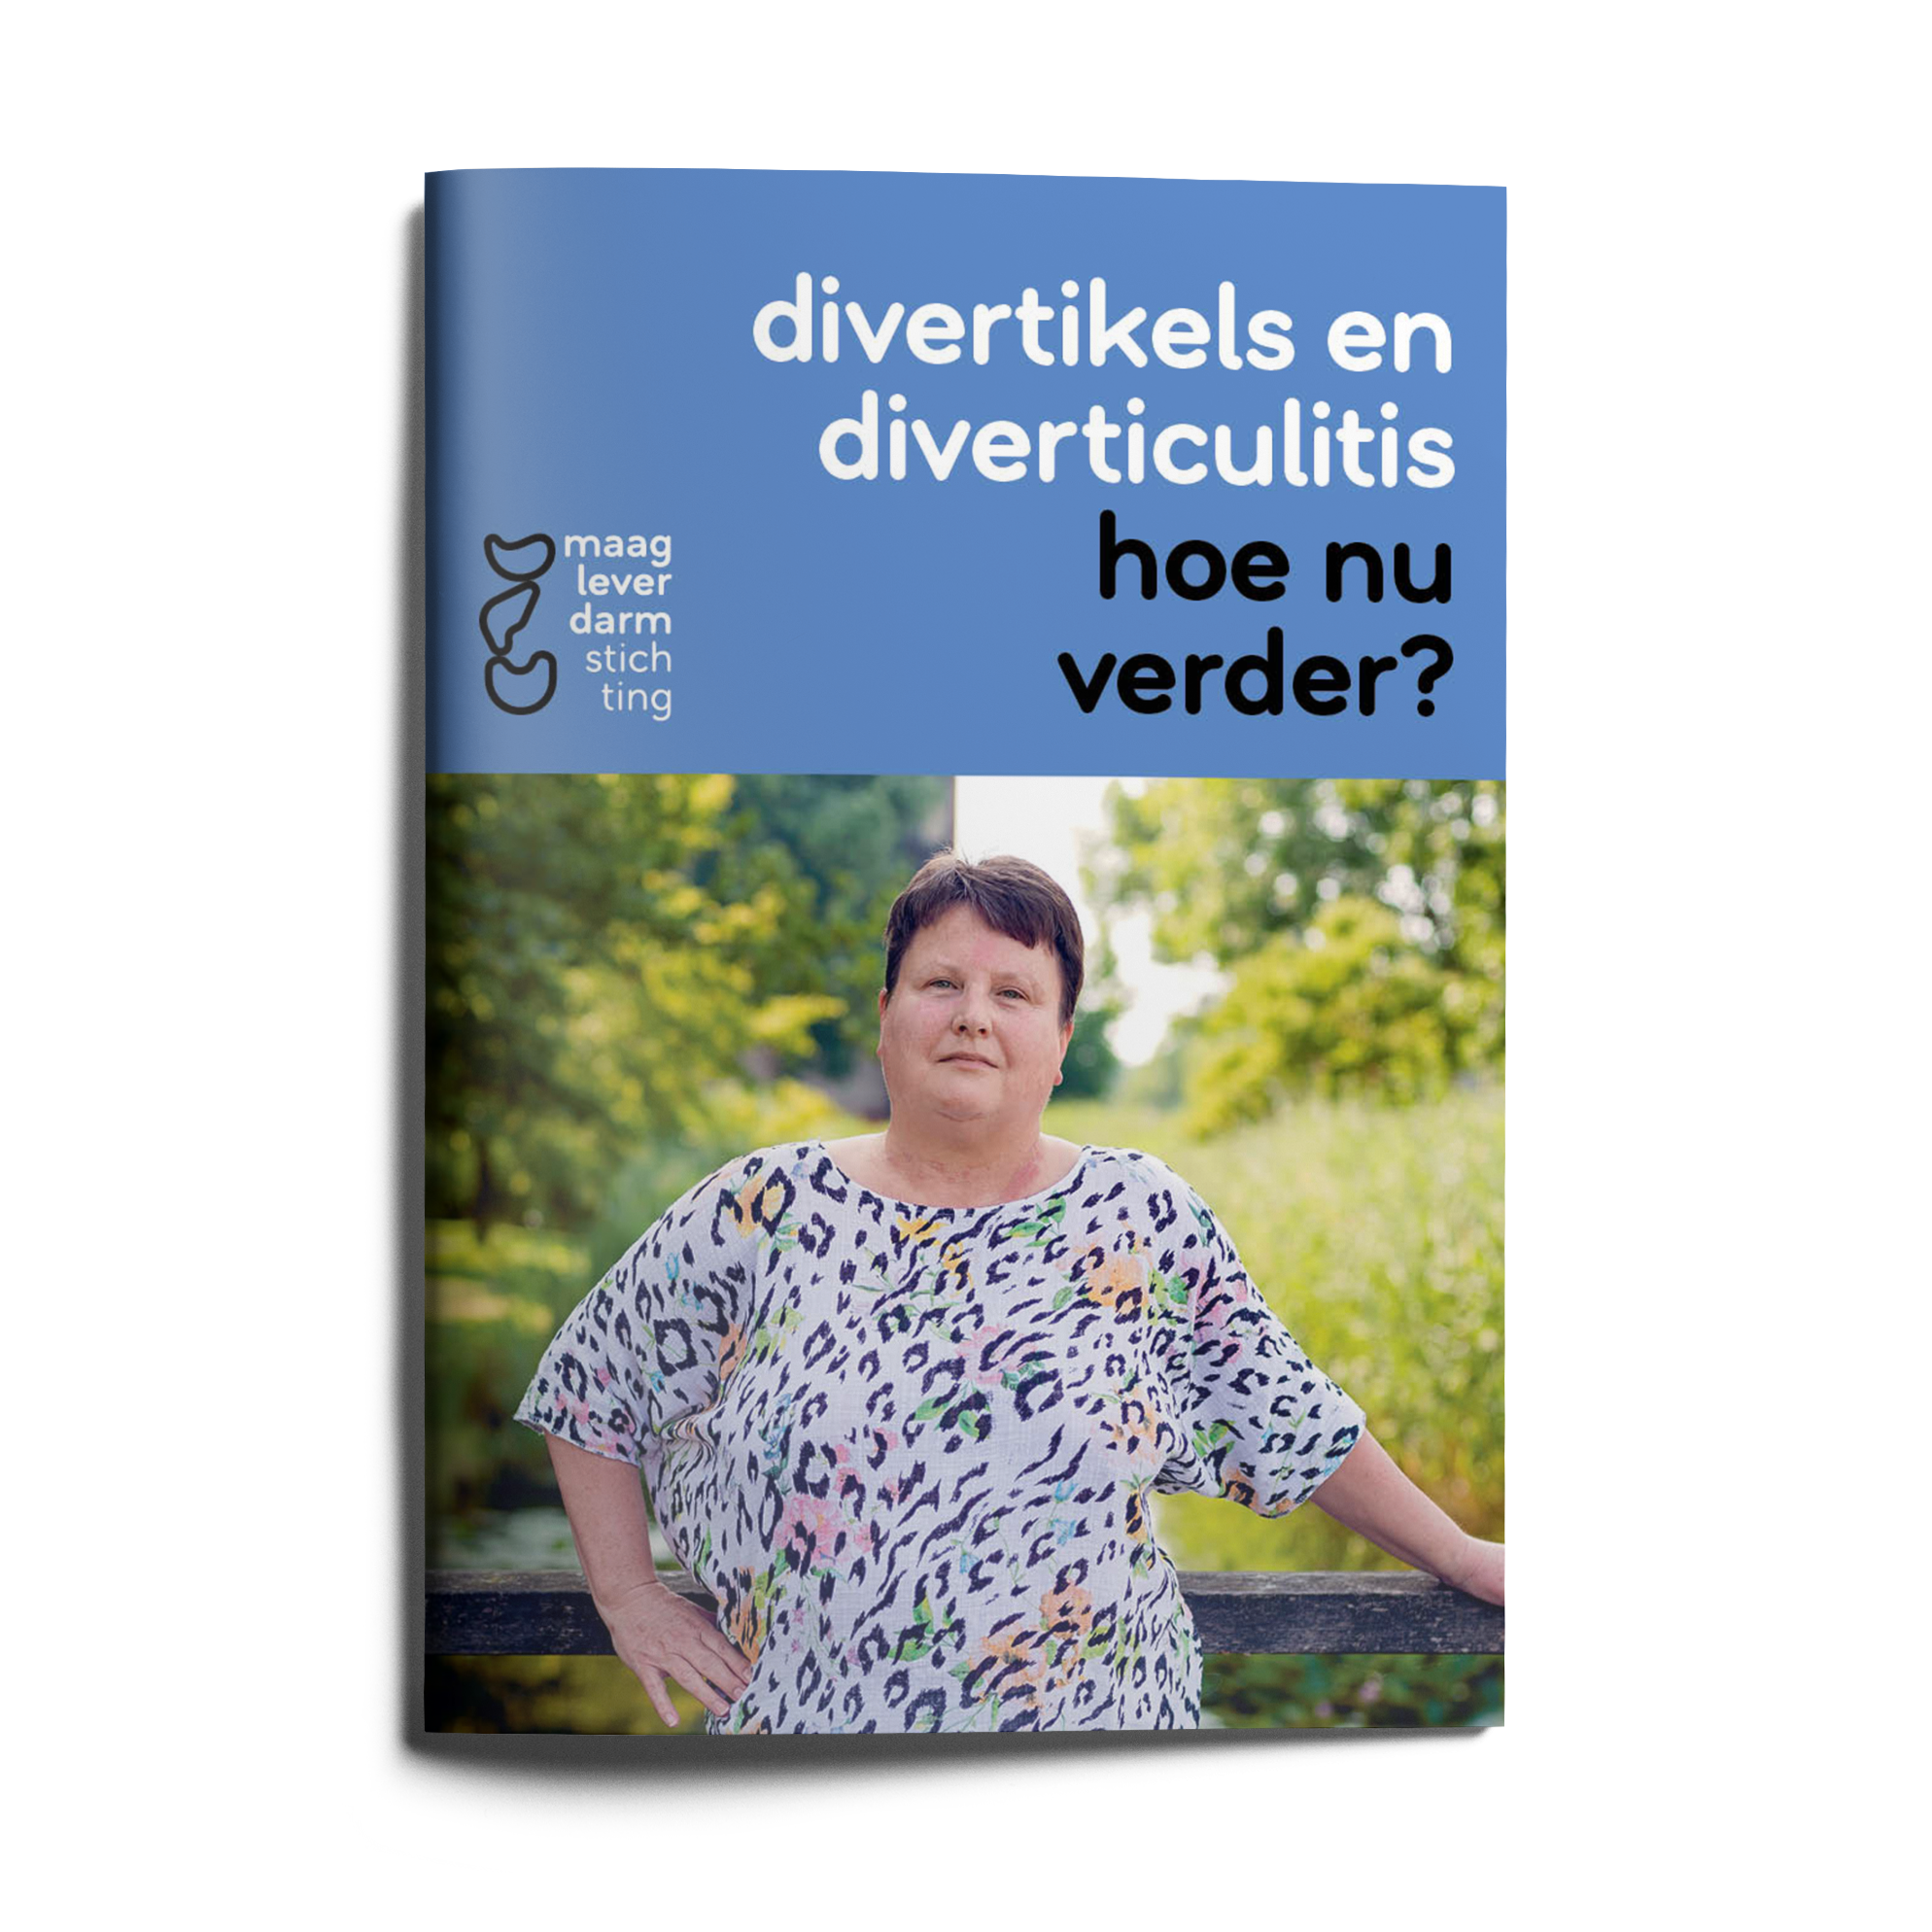 https://www.mlds.nl/content/uploads/MLDS_Brochure_Divertikels_Online_Mockup.png